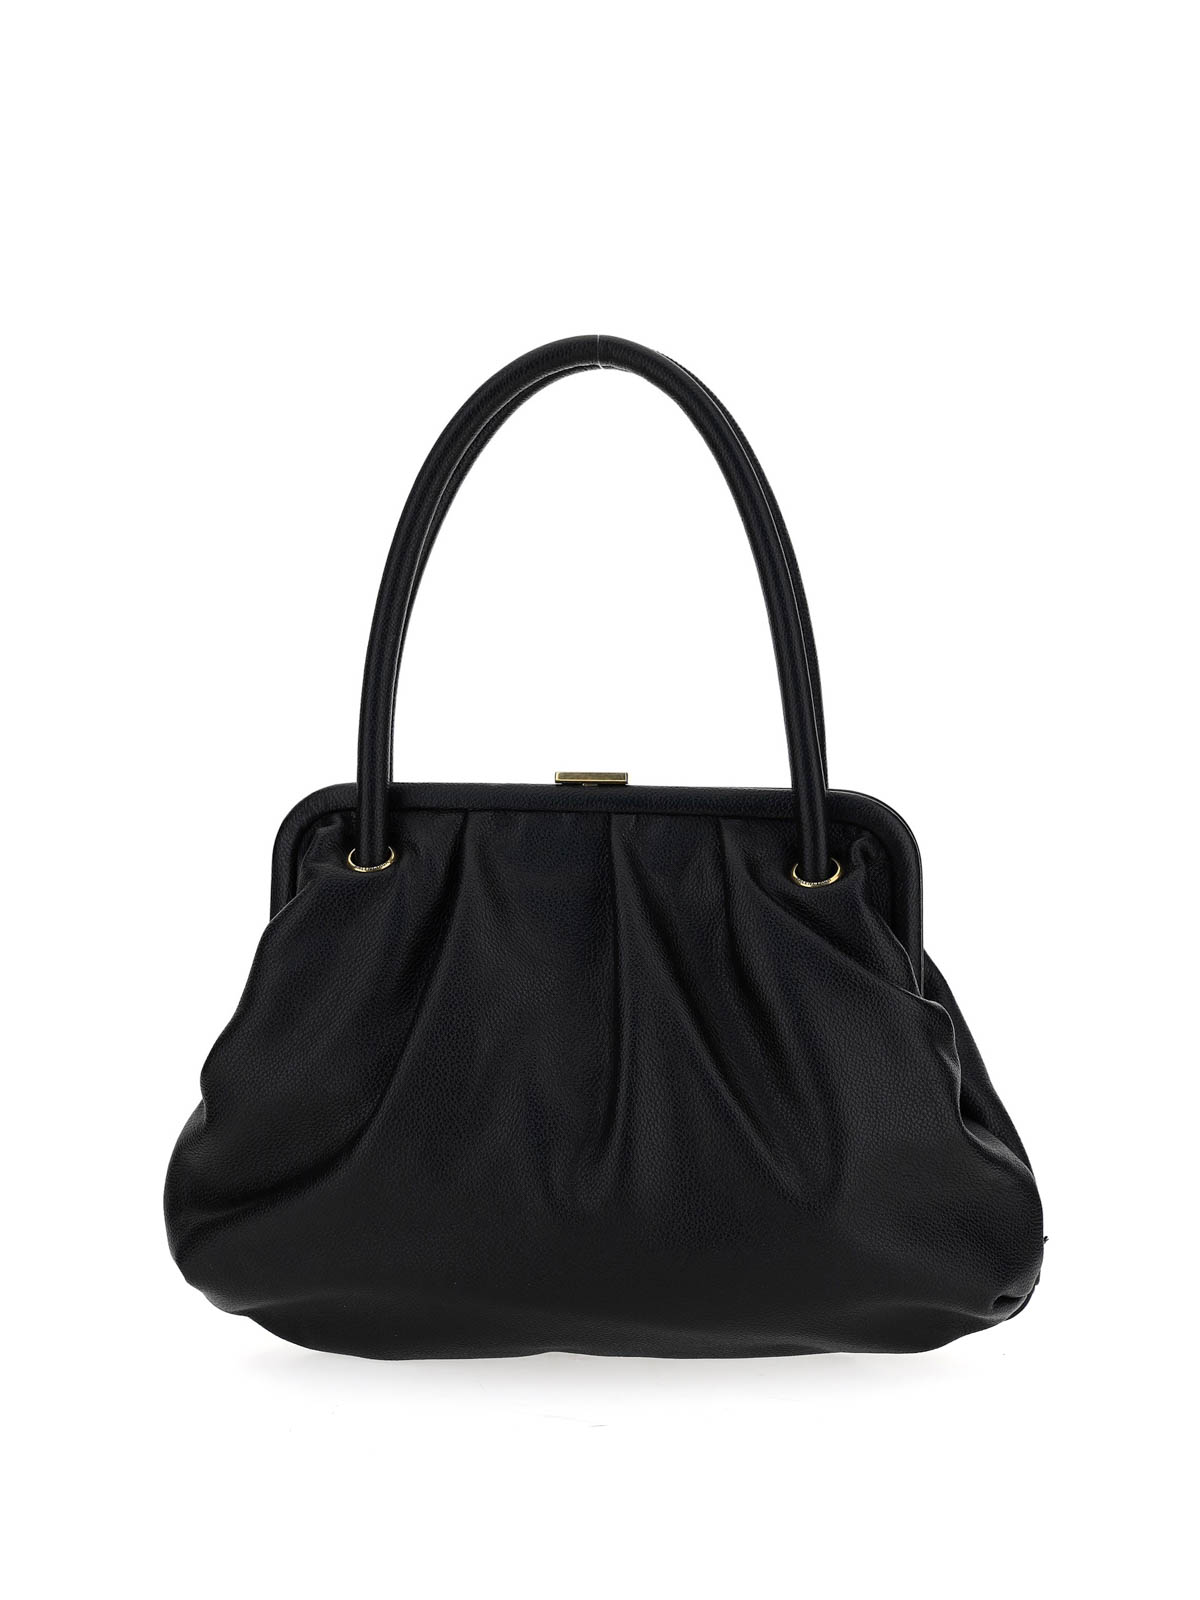 Balenciaga - Logo print handbag - totes bags - 6387101IZOM1000 | iKRIX.com